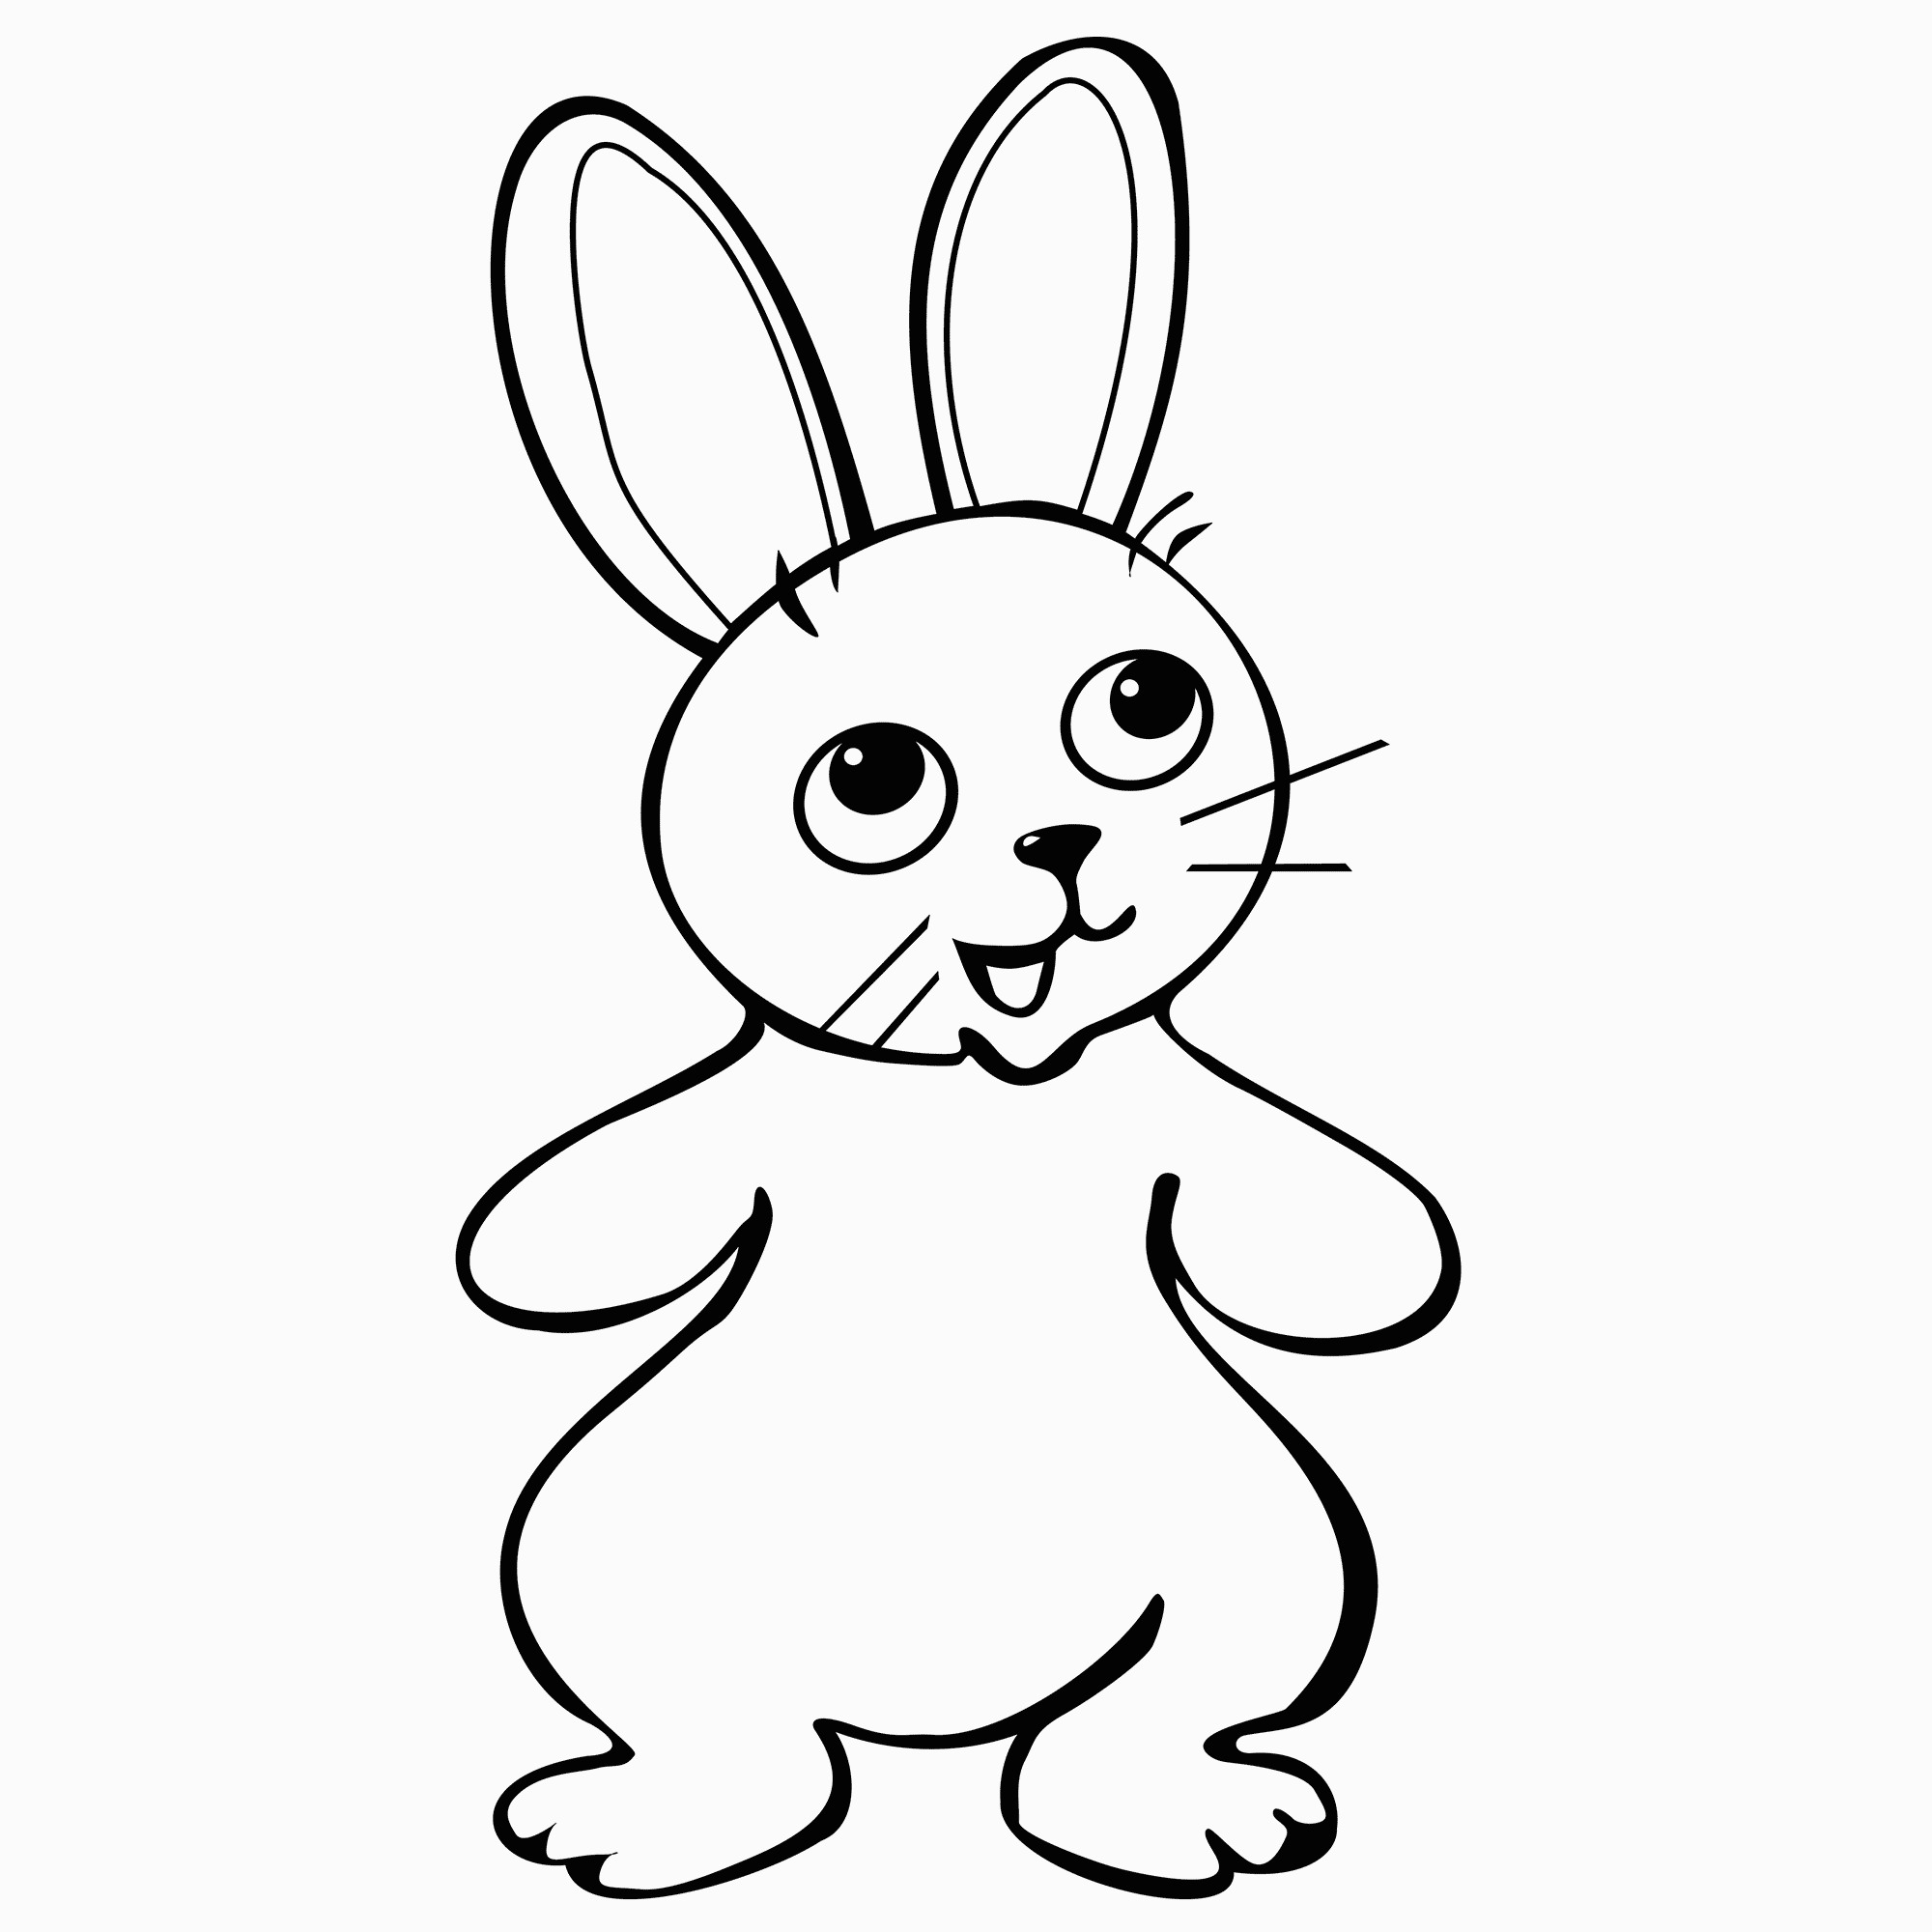 Vẽ con thỏ đứng bằng hai chân